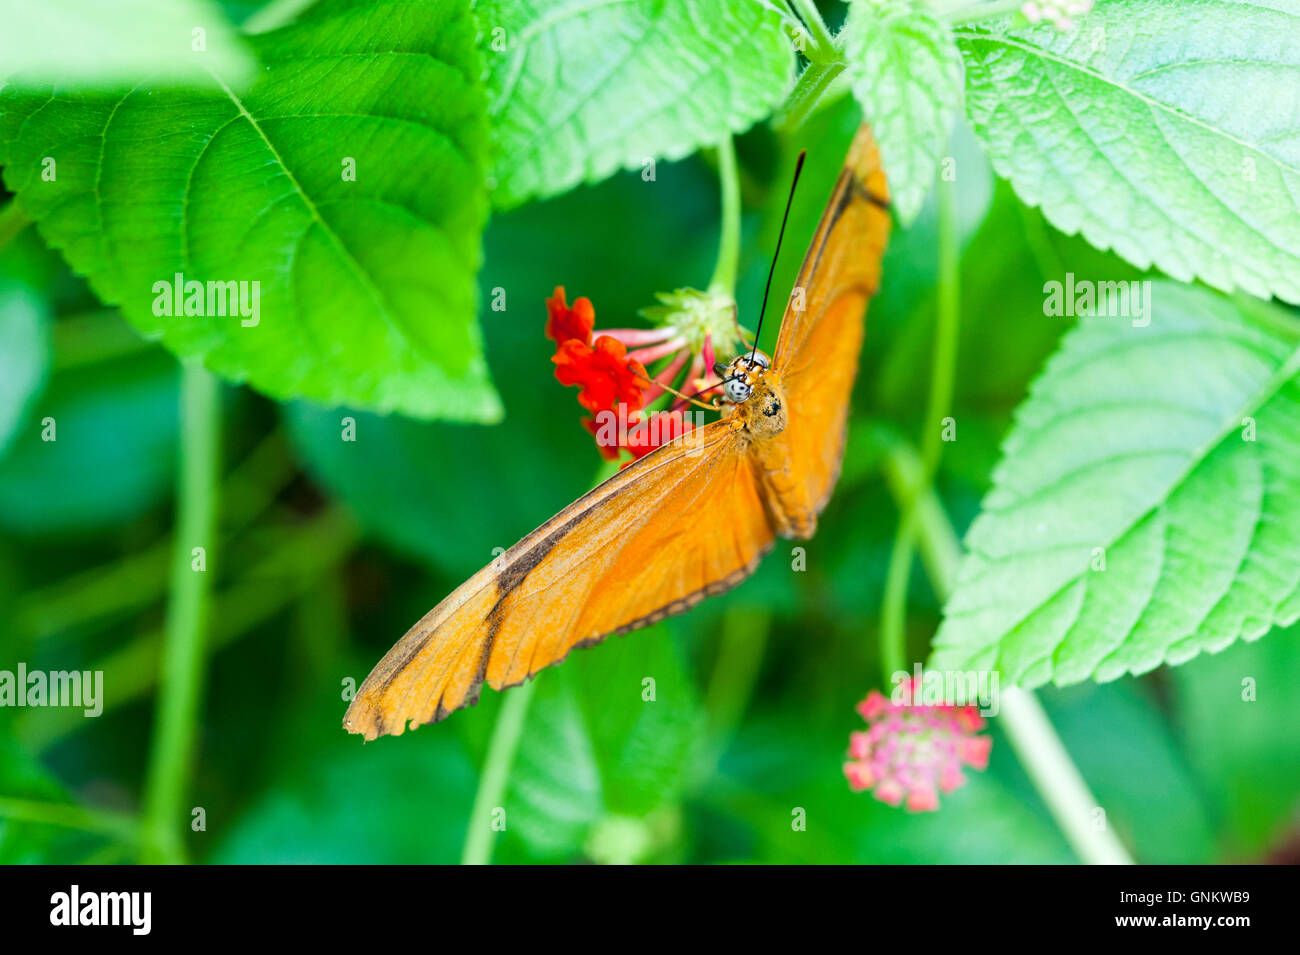 Julia Heliconian naranja o Dryas iulia butterfly, una especie de pincel-footed butterfly, posado sobre una flor Foto de stock